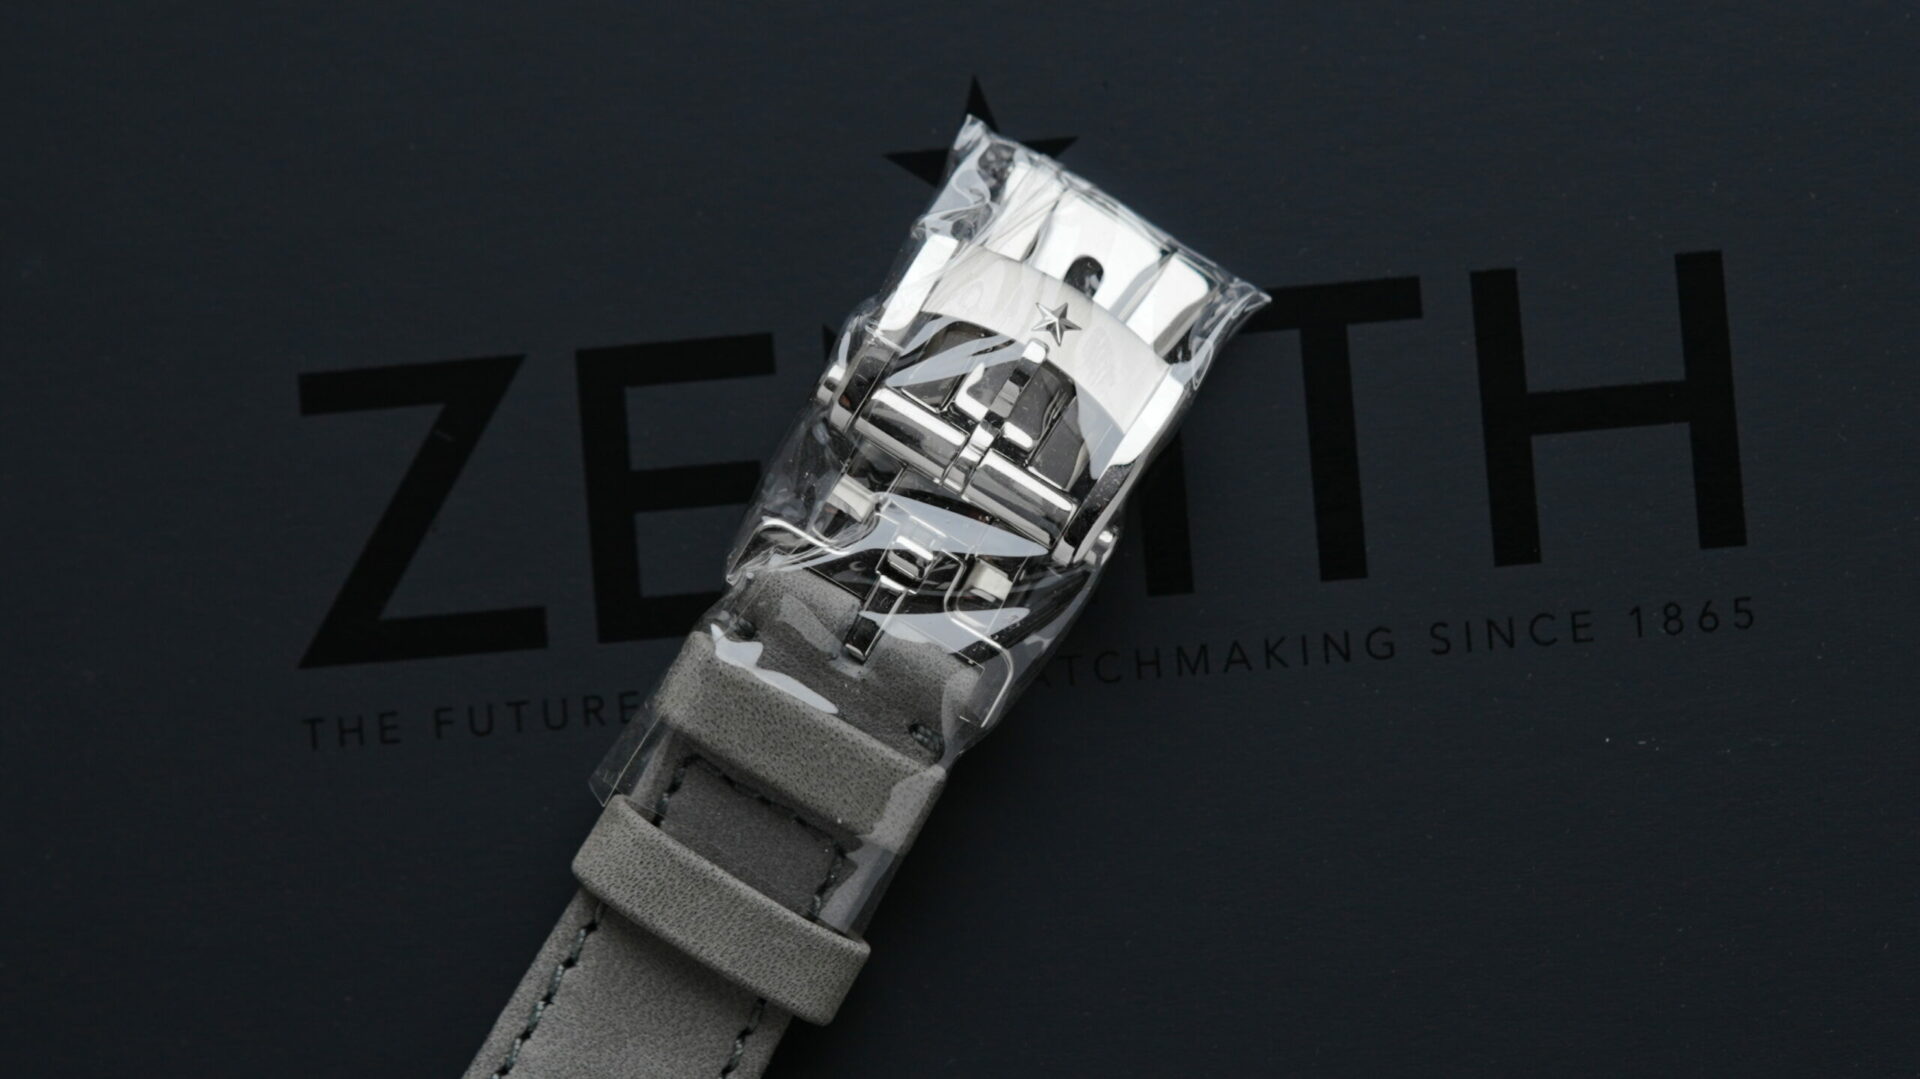 Zenith Chronomaster Original Striking 10th watch buckle still in plastic.